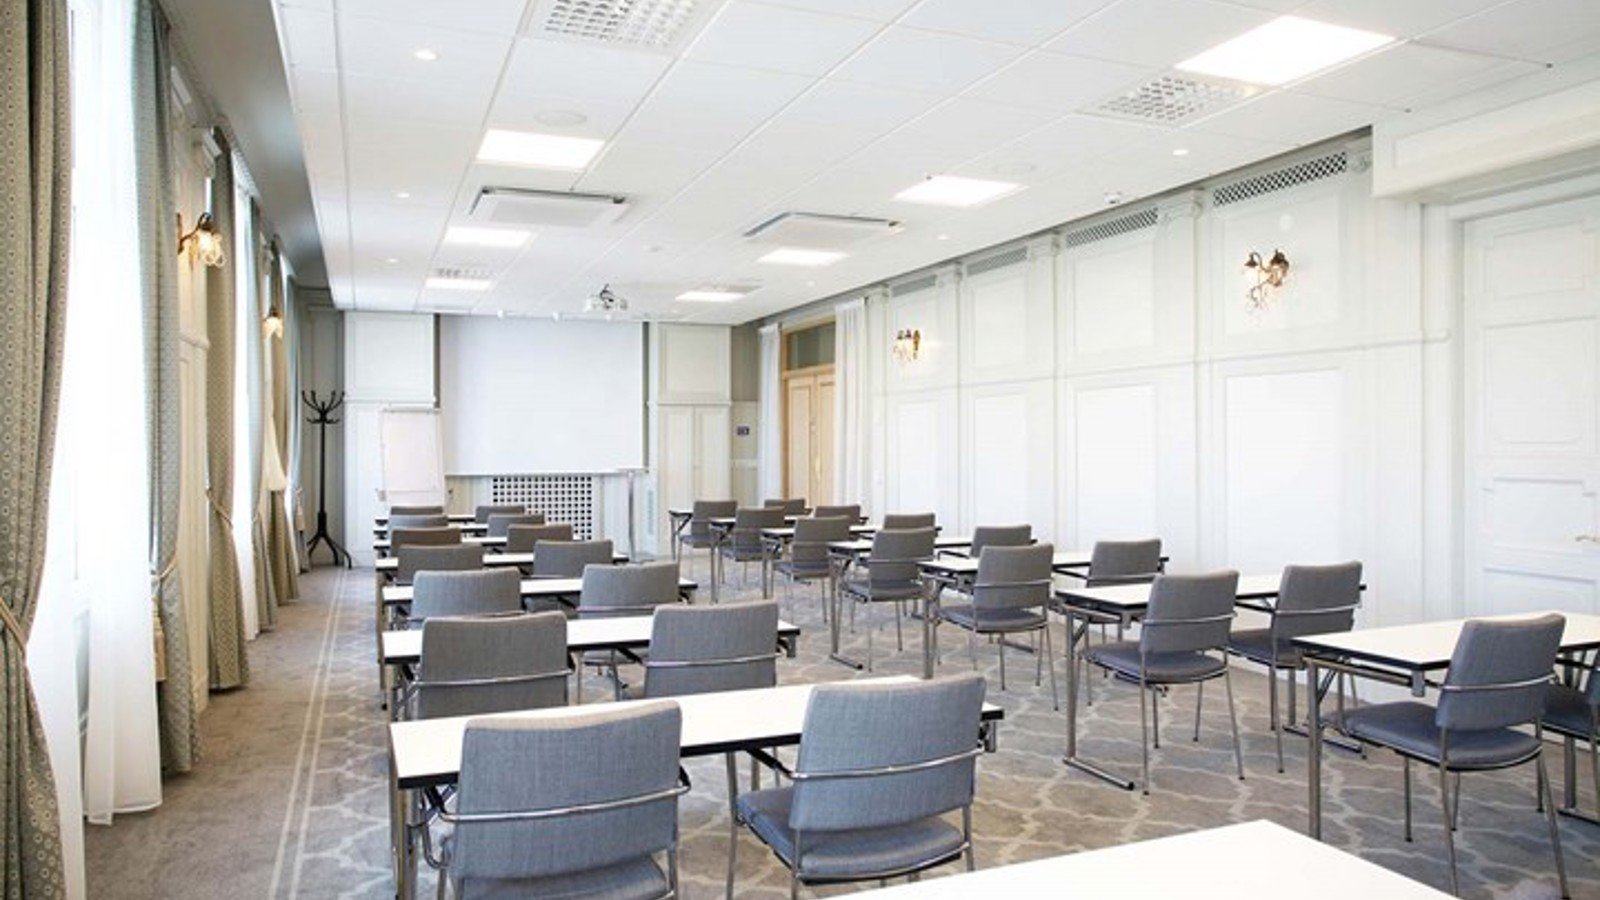 Konferensrum med skolsittning, grå stolar, vita väggar och stora fönster